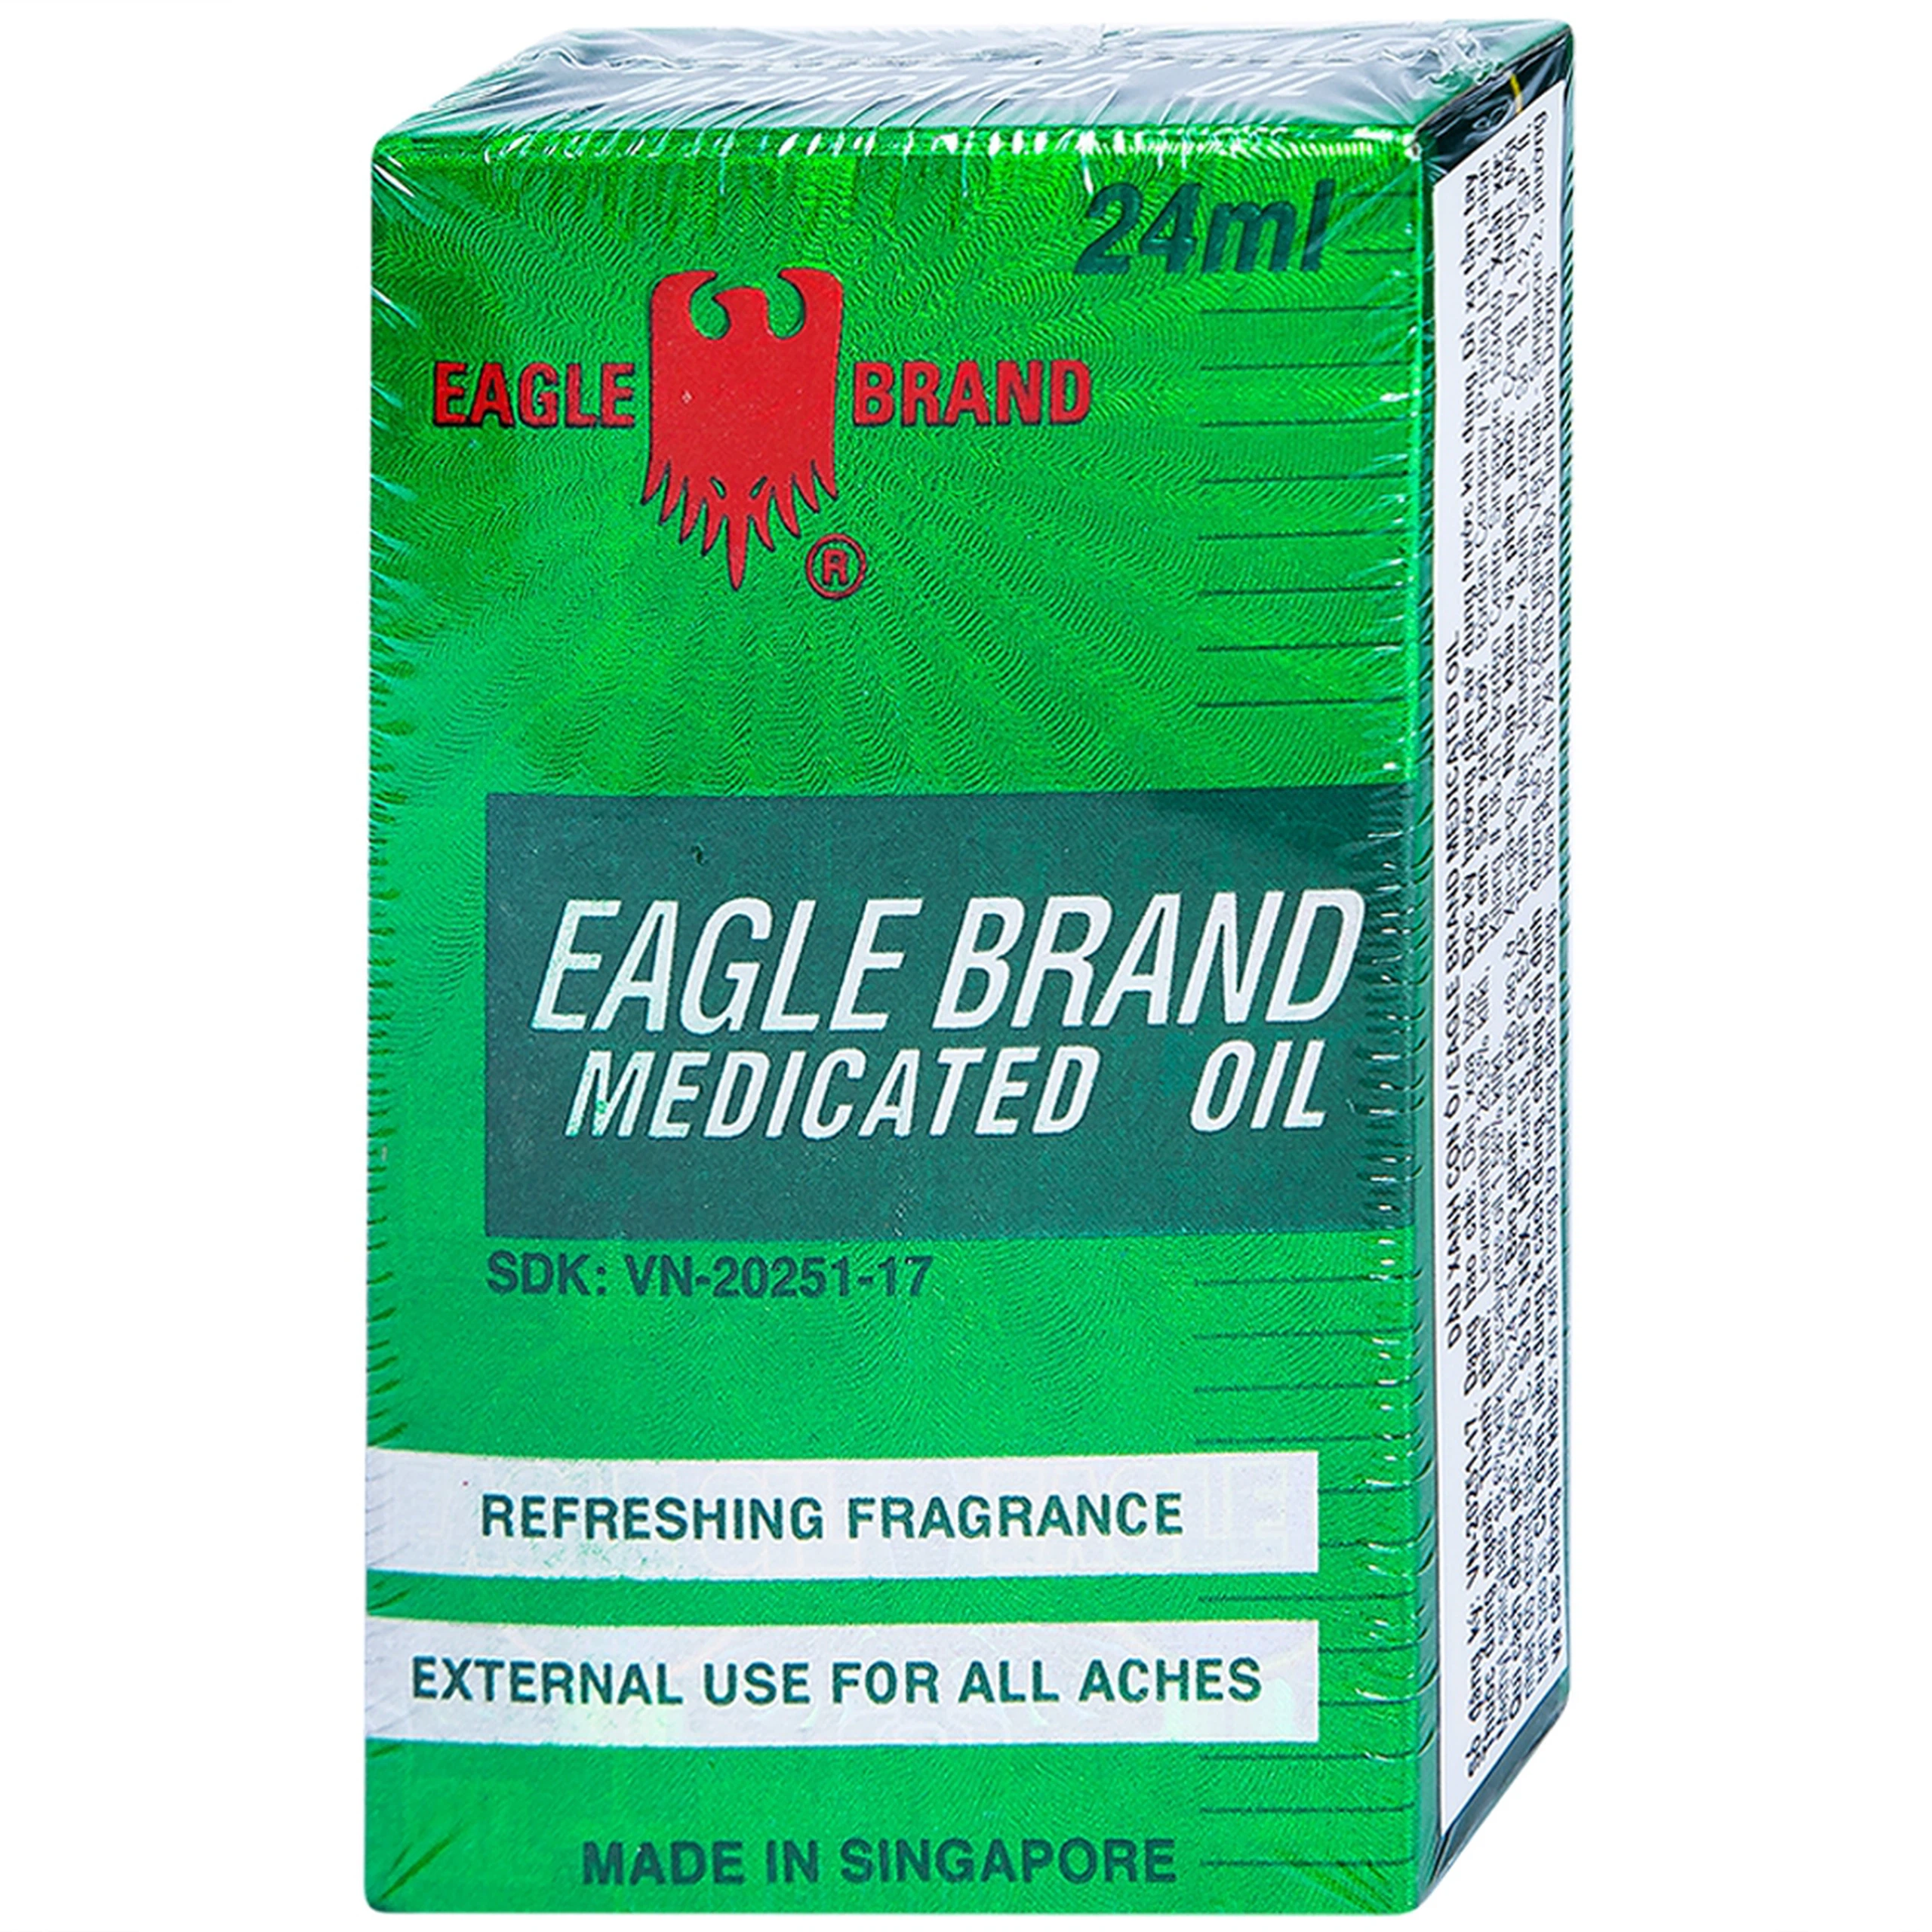 Dầu gió xanh Con Ó Eagle Brand Medicated Oil giảm nhức đầu, cảm cúm, đau lưng, viêm khớp (12 chai x 24ml)